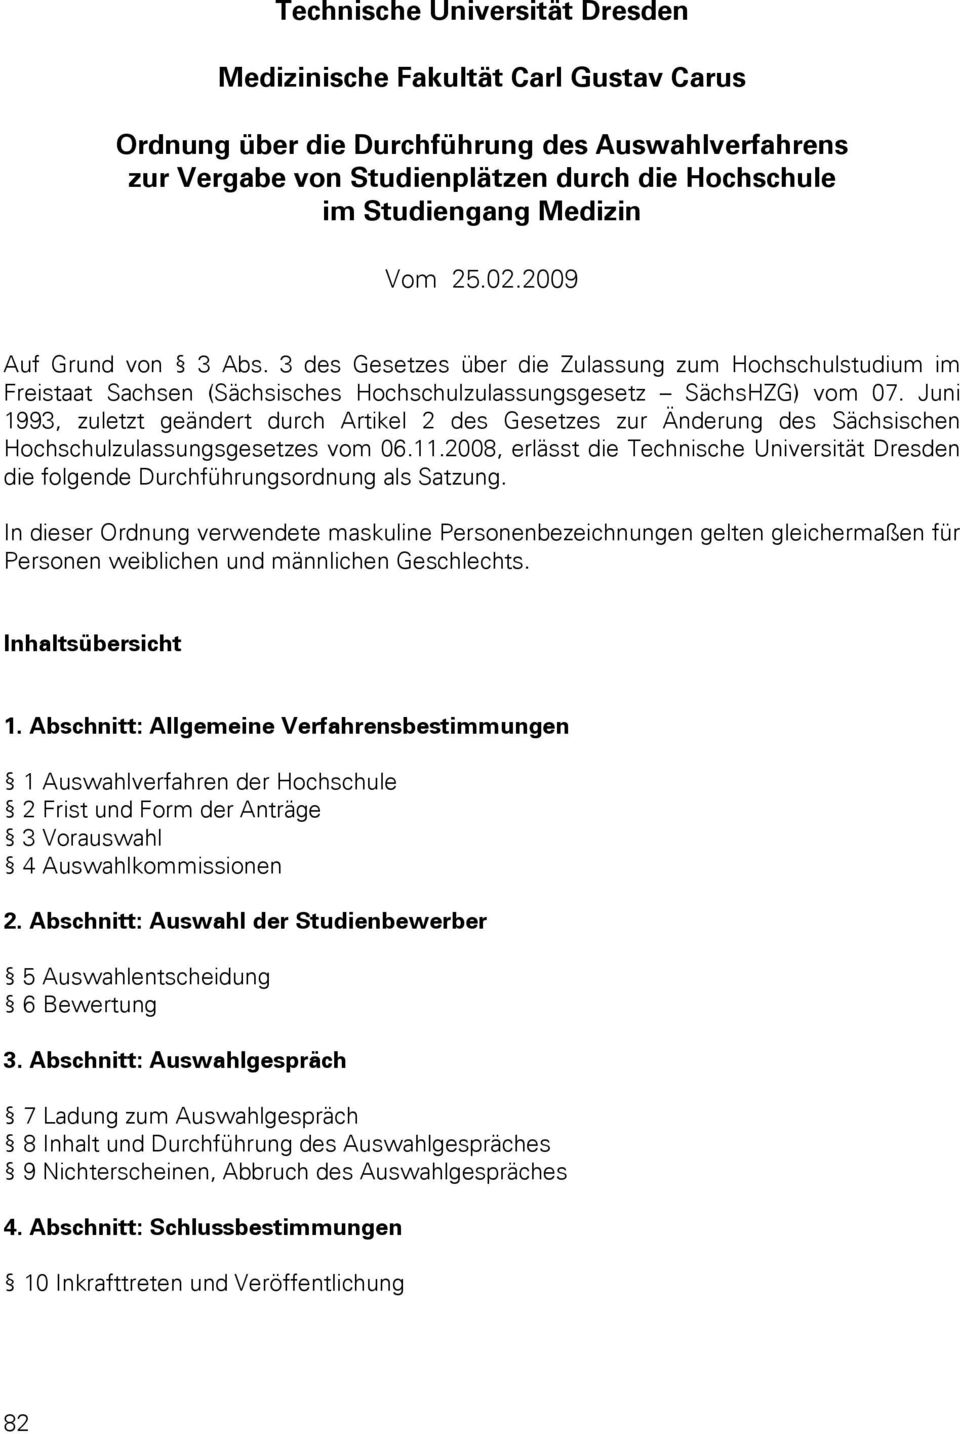 Juni 1993, zuletzt geändert durch Artikel 2 des Gesetzes zur Änderung des Sächsischen Hochschulzulassungsgesetzes vom 06.11.